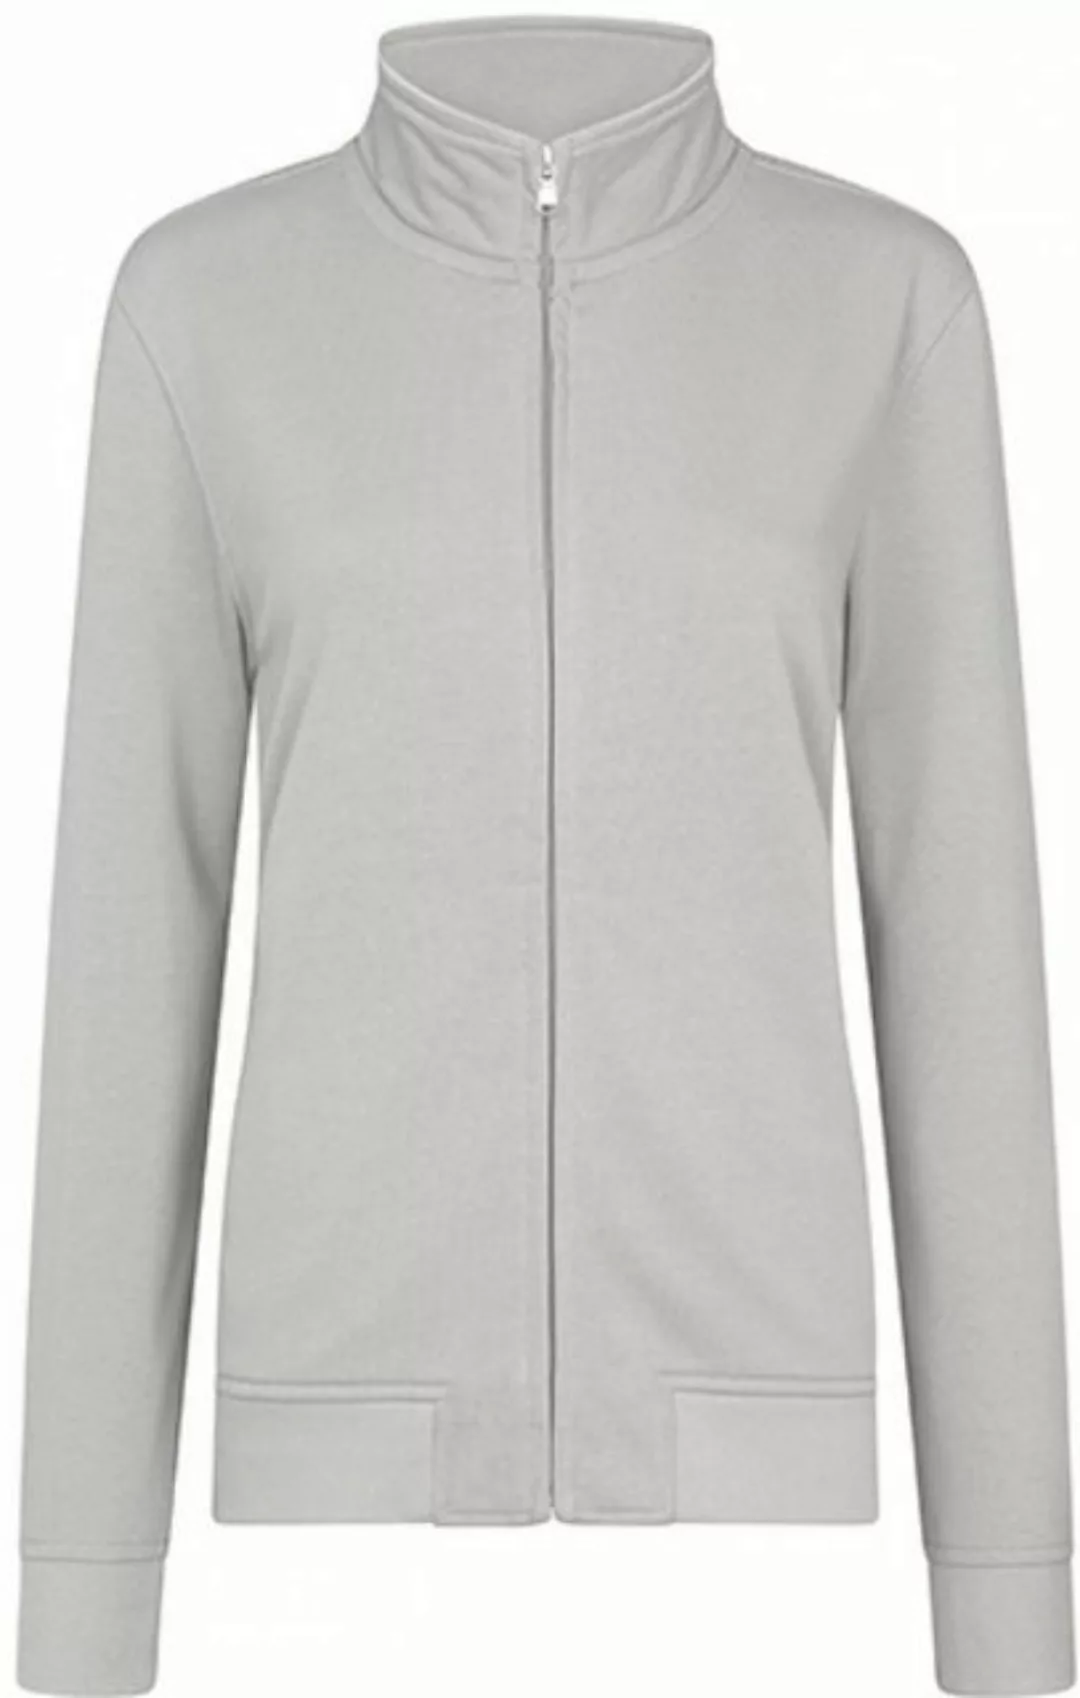 HRM Sweatjacke Women´s Premium Full-Zip Sweat Jacket günstig online kaufen